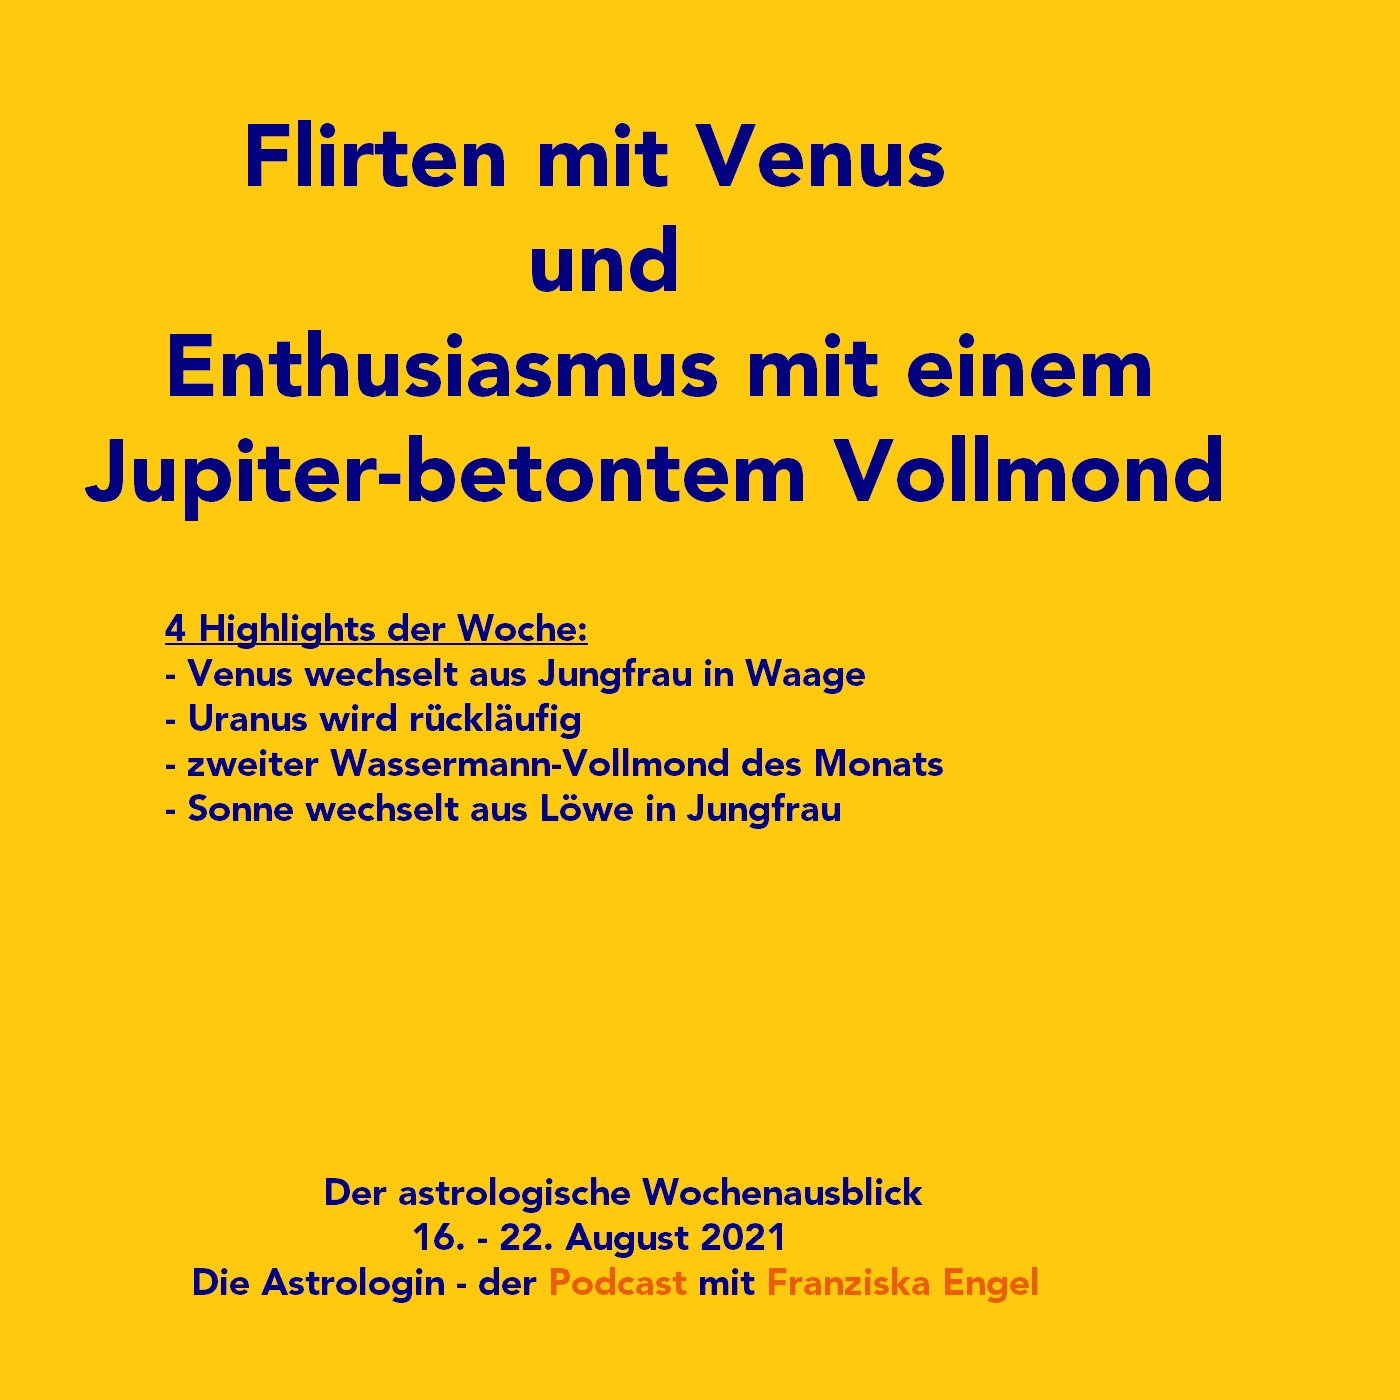 Flirten mit Venus und Enthusiasmus mit Jupiter-betontem Vollmond